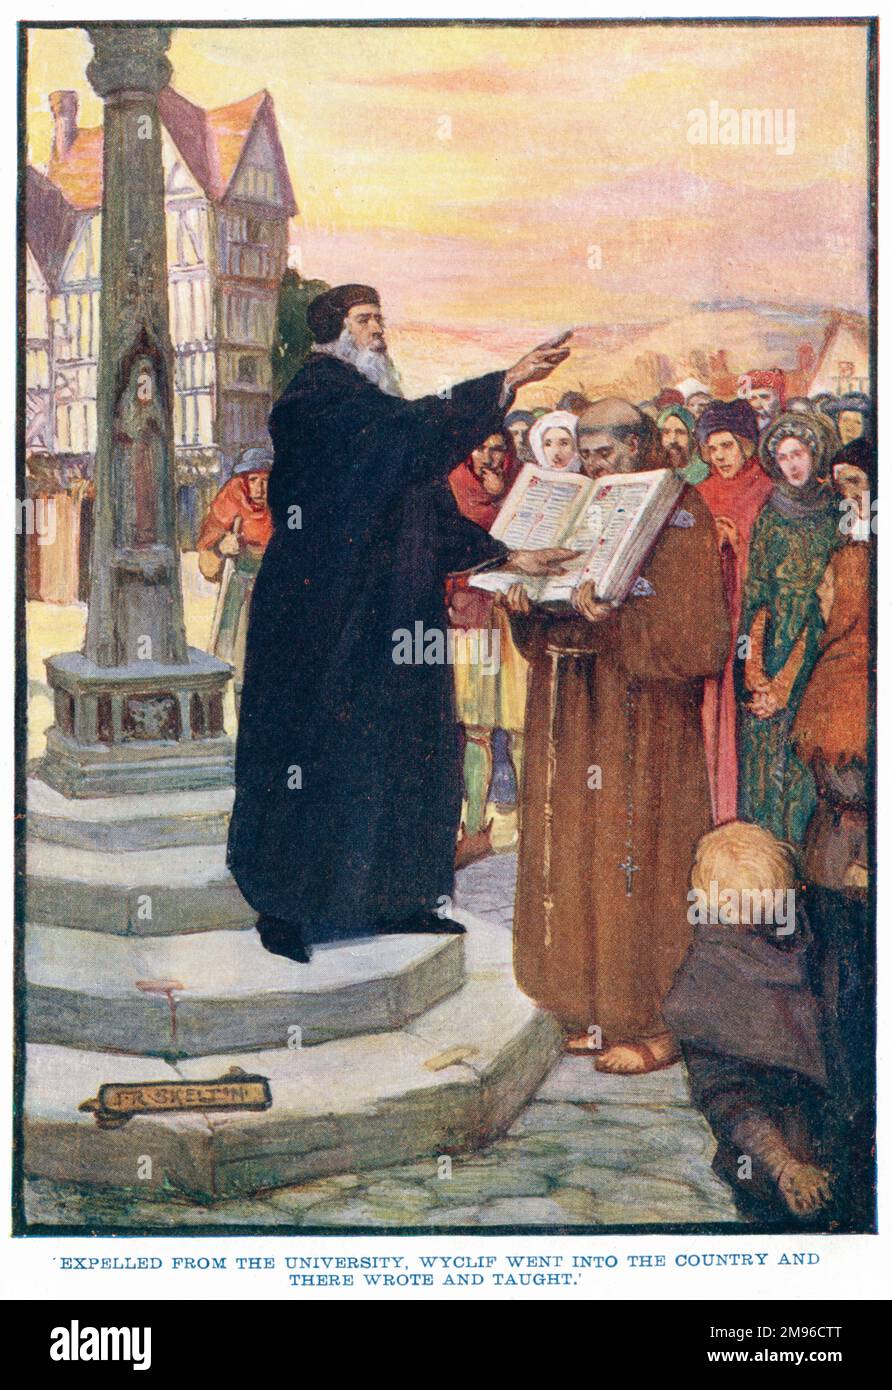 Wyclif wurde von der Universität verwiesen, ging ins Land und schrieb und unterrichtete. John Wyclif (c.1324-1384), englischer Theologe und Reformist, der von der Universität Oxford ausgeschlossen wurde, weil er sich der päpstlichen Autorität widersetzte (zu dieser Zeit war der Papst in Avignon, nicht in Rom), predigt dem Volk. Seine Anhänger waren bekannt als die Lollards. Stockfoto